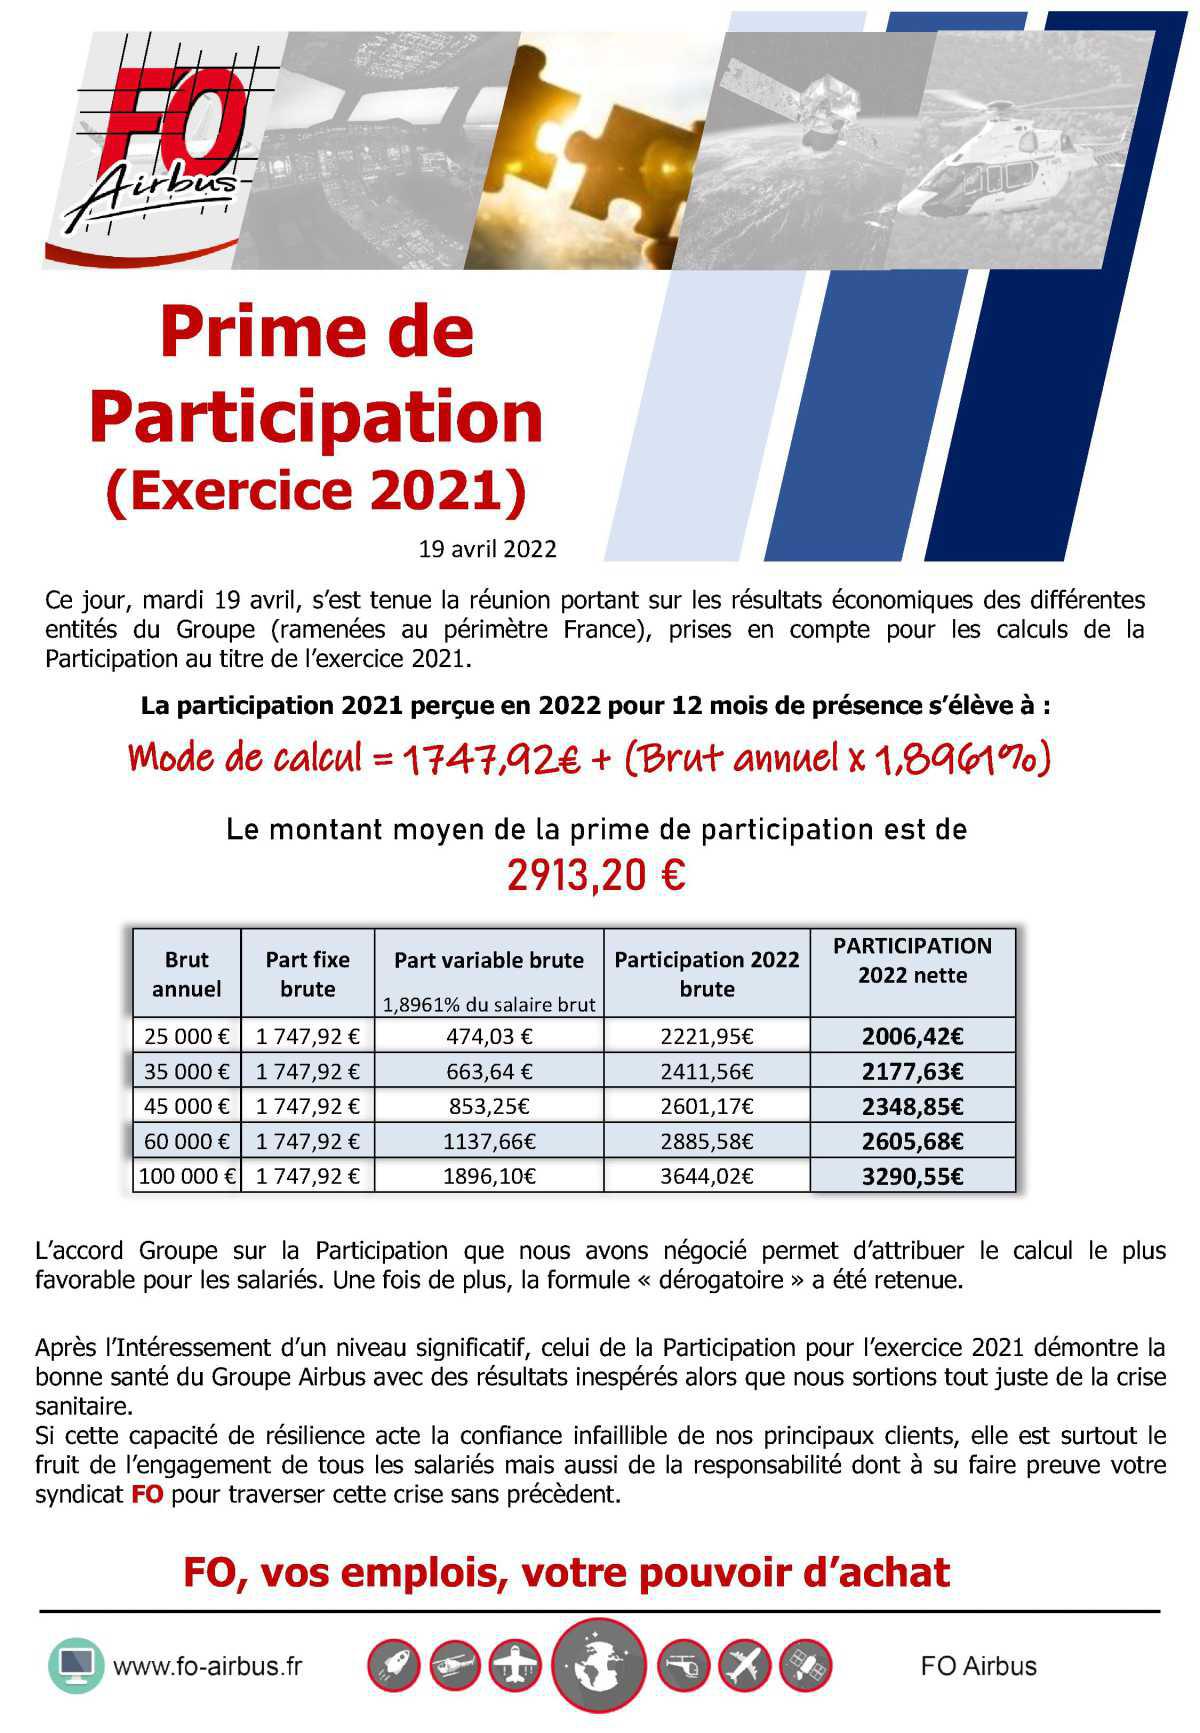 Prime de participation 2022 (Exercice 2021)